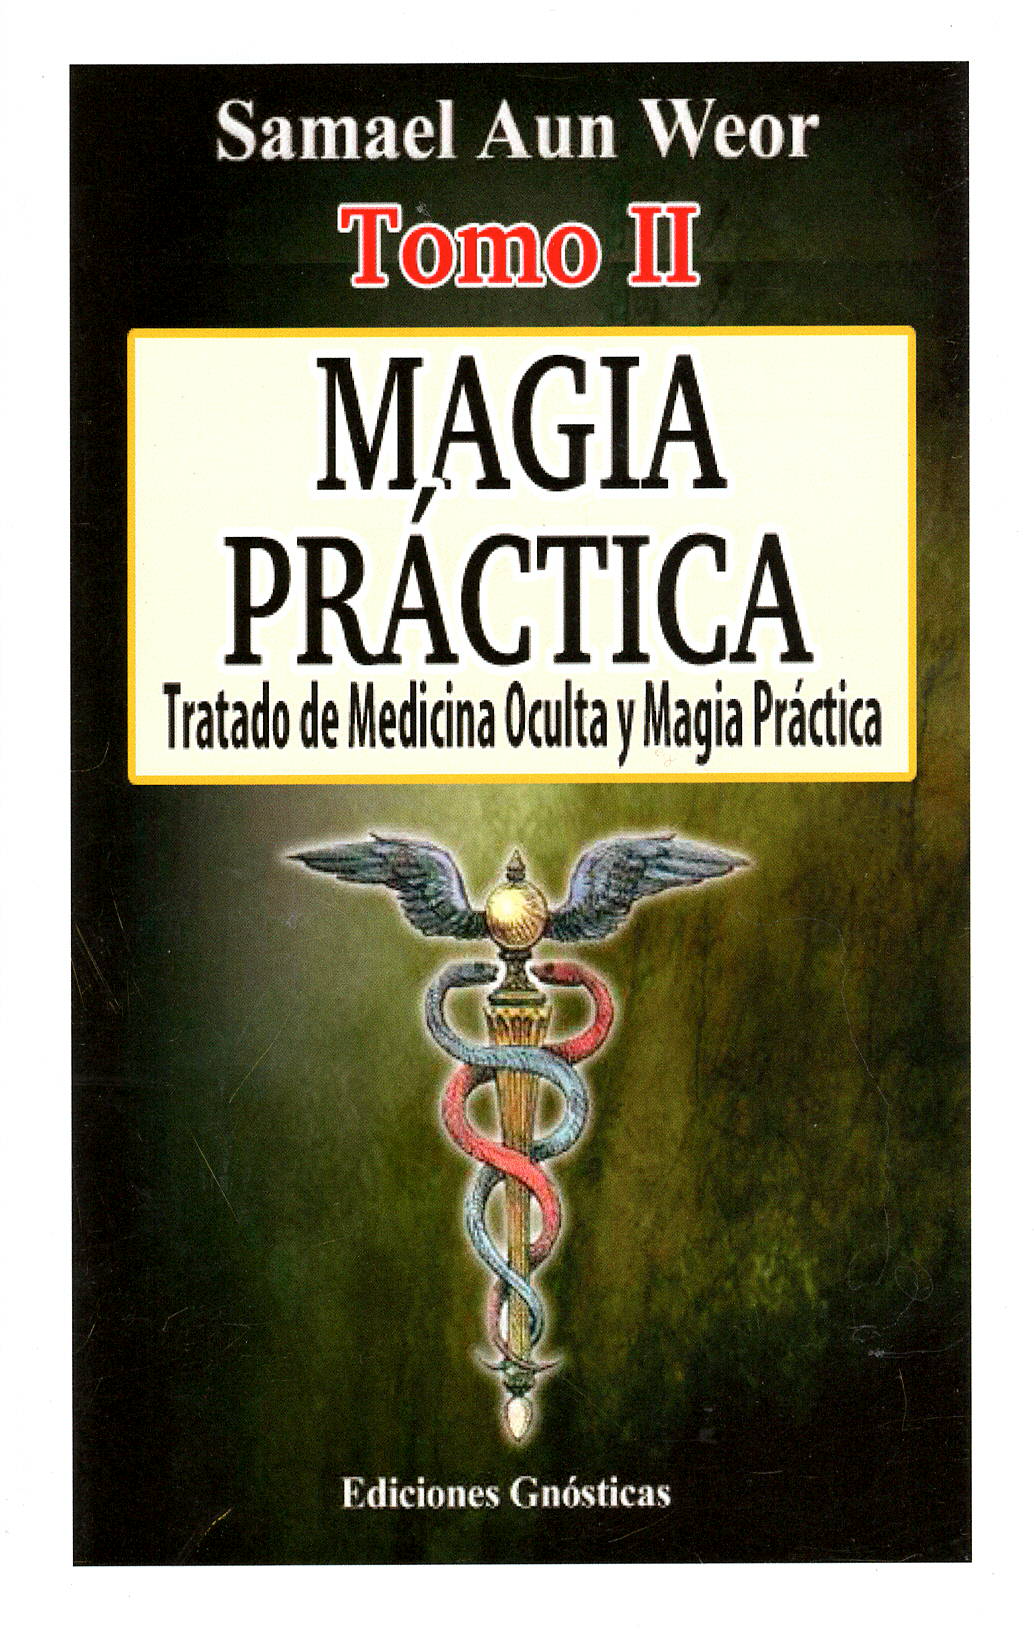 Tratado de Medicina Oculta y Magia Práctica, por Samael Aun Weor